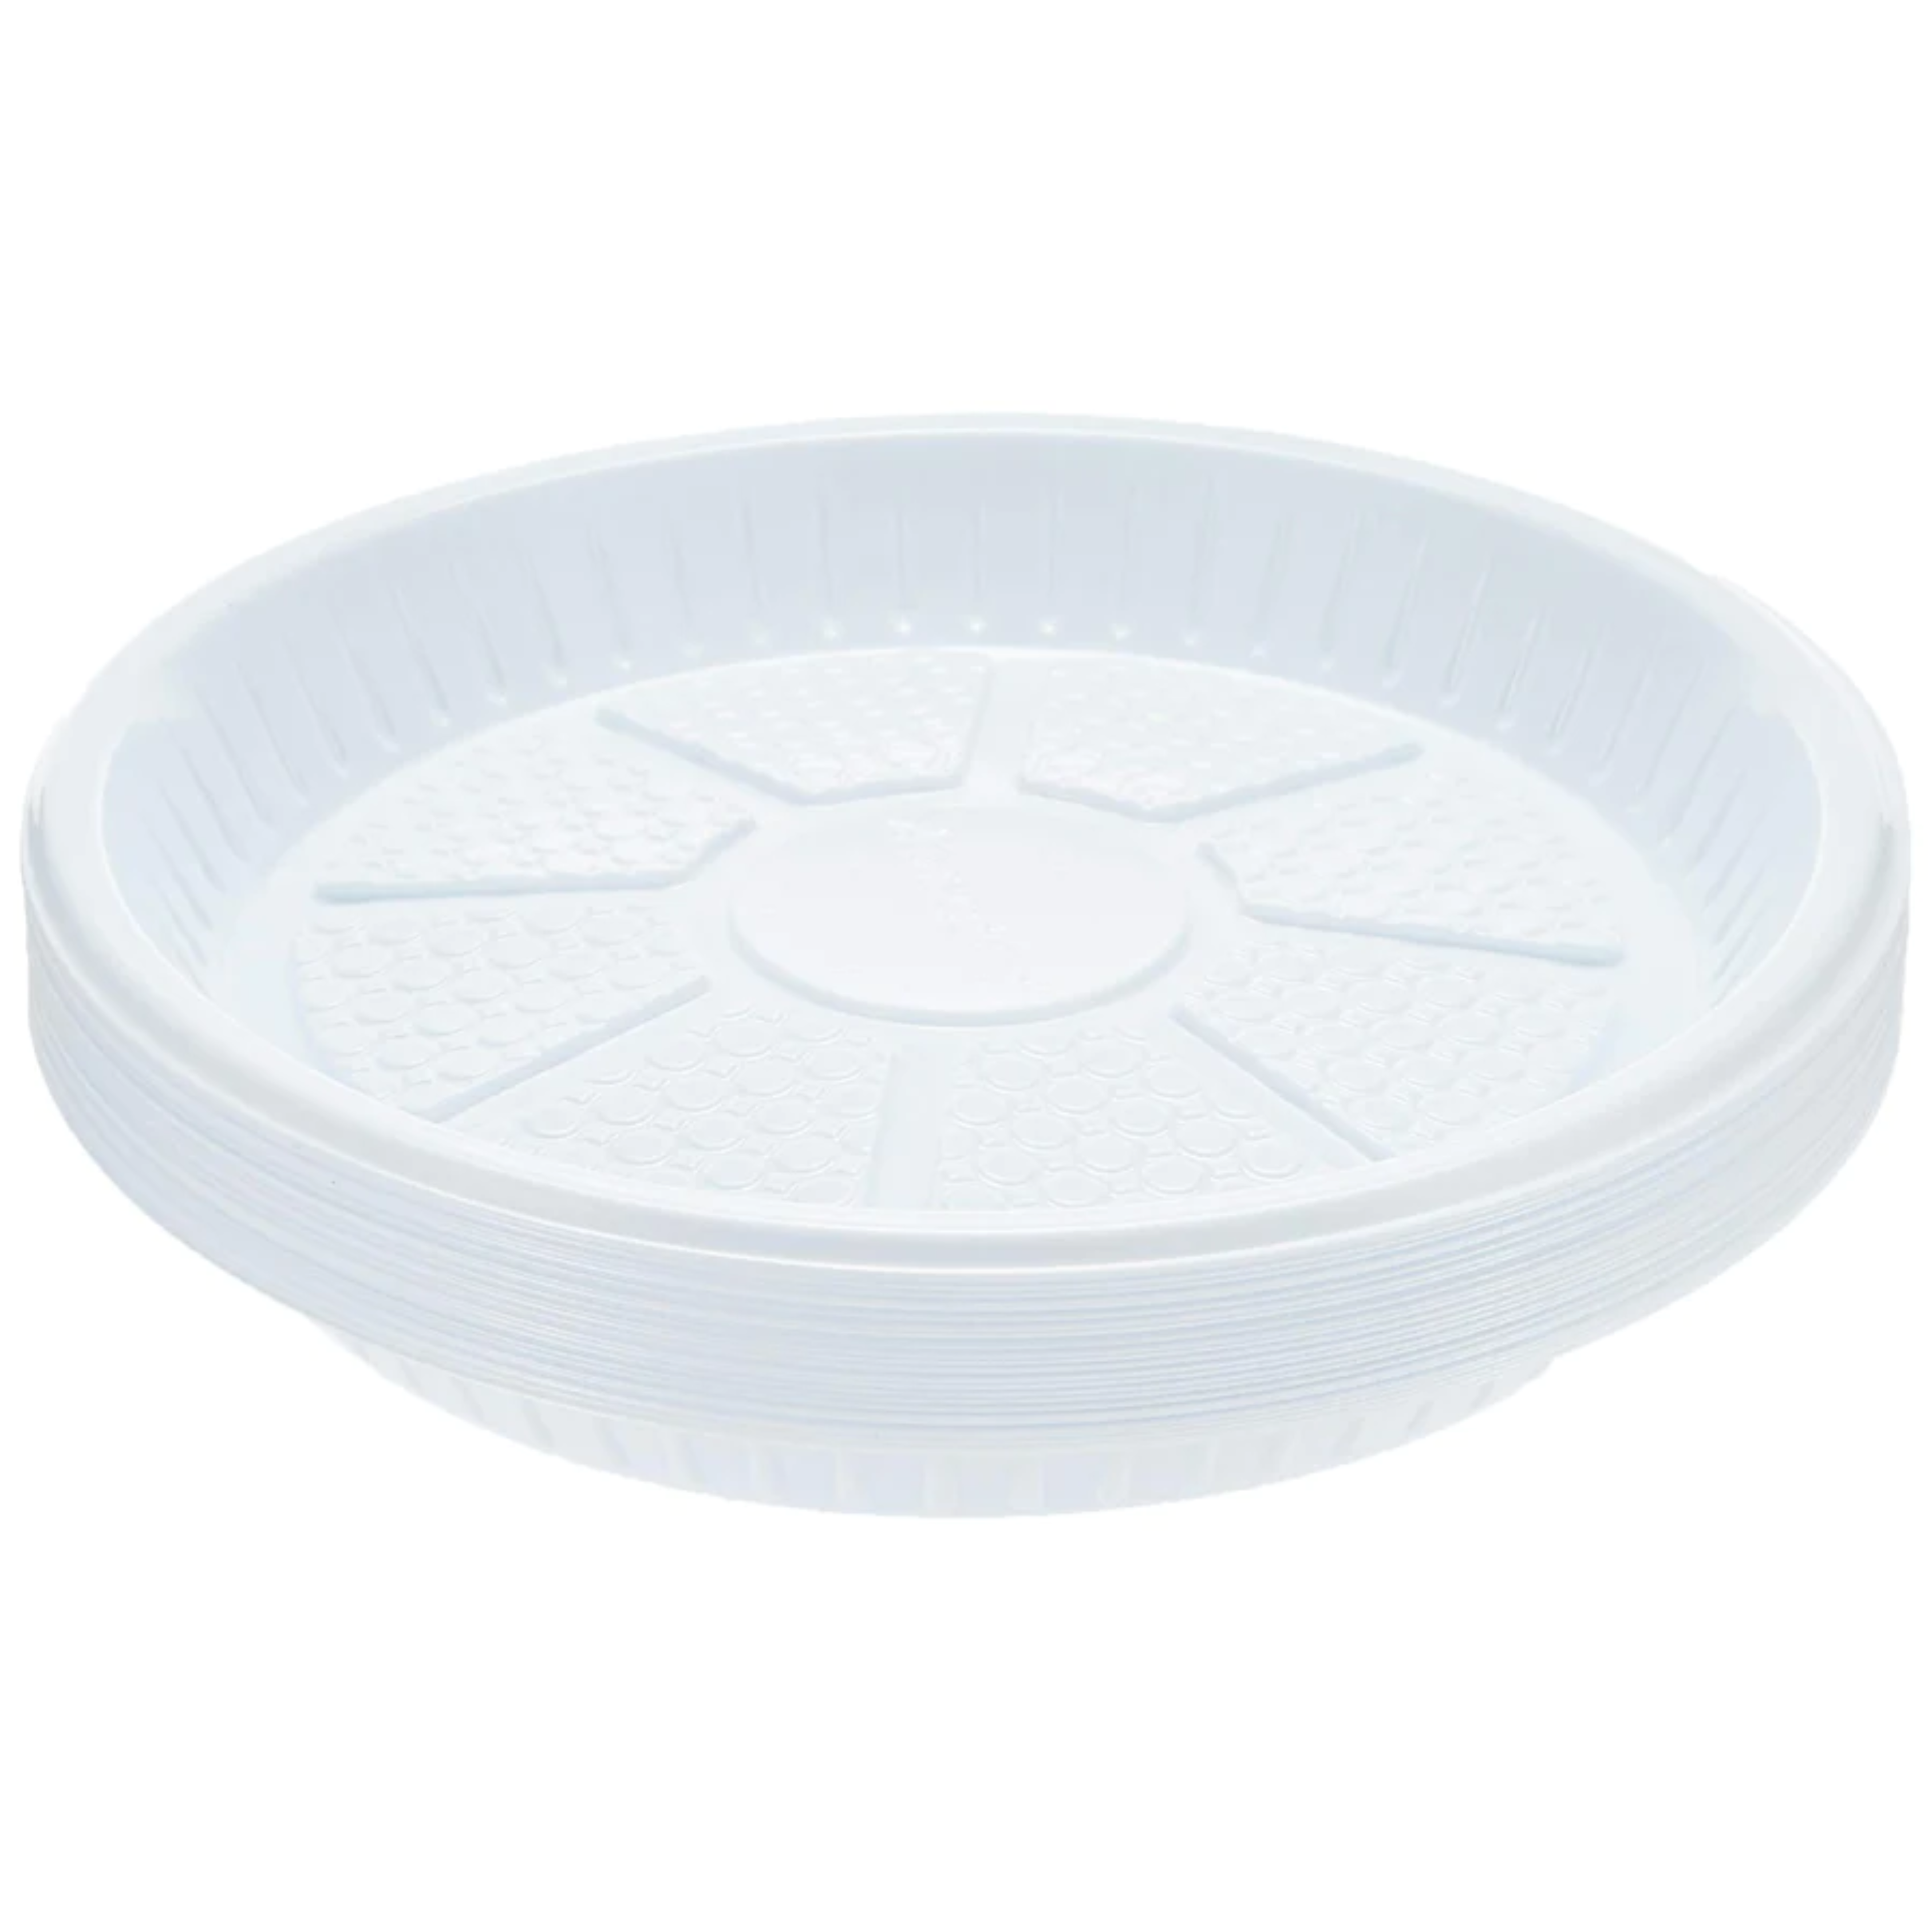 Hotpack Premium Quality Disposable Plastic Plates 9 Inches- 25Pcs (6291101711115)